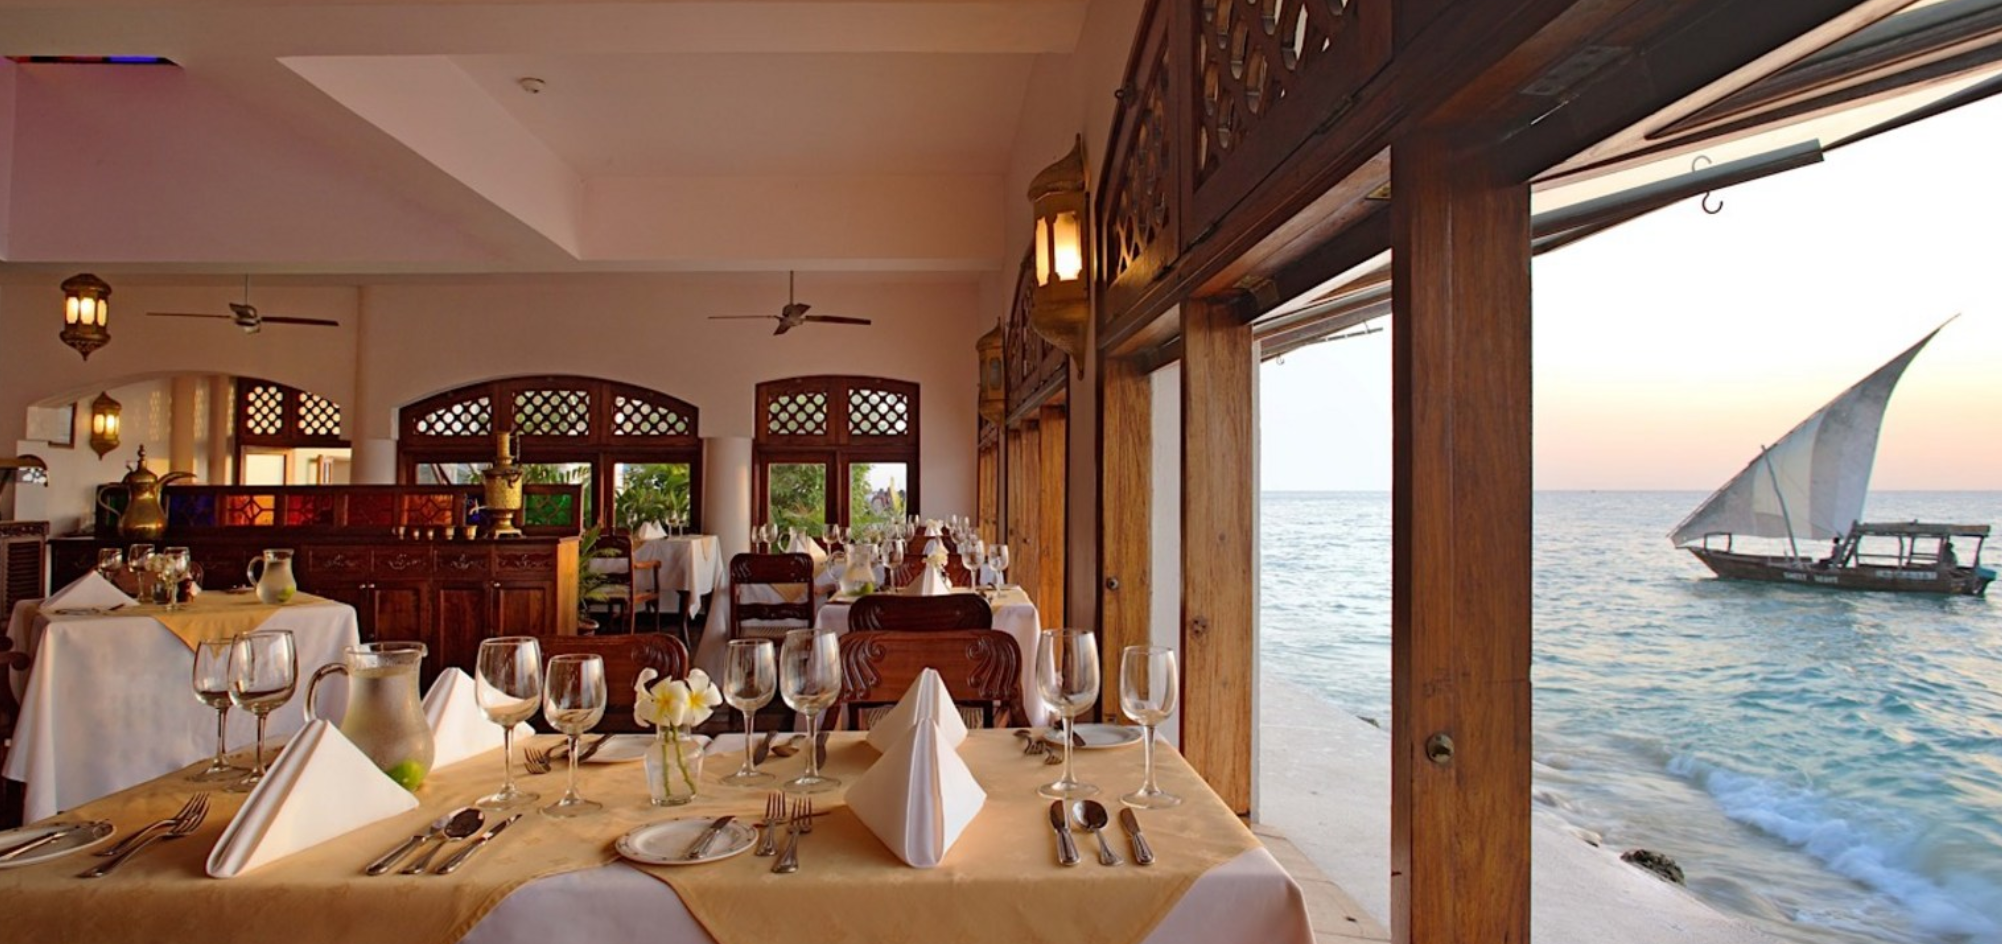 Zanzibar Serena Hotel restaurant with water views